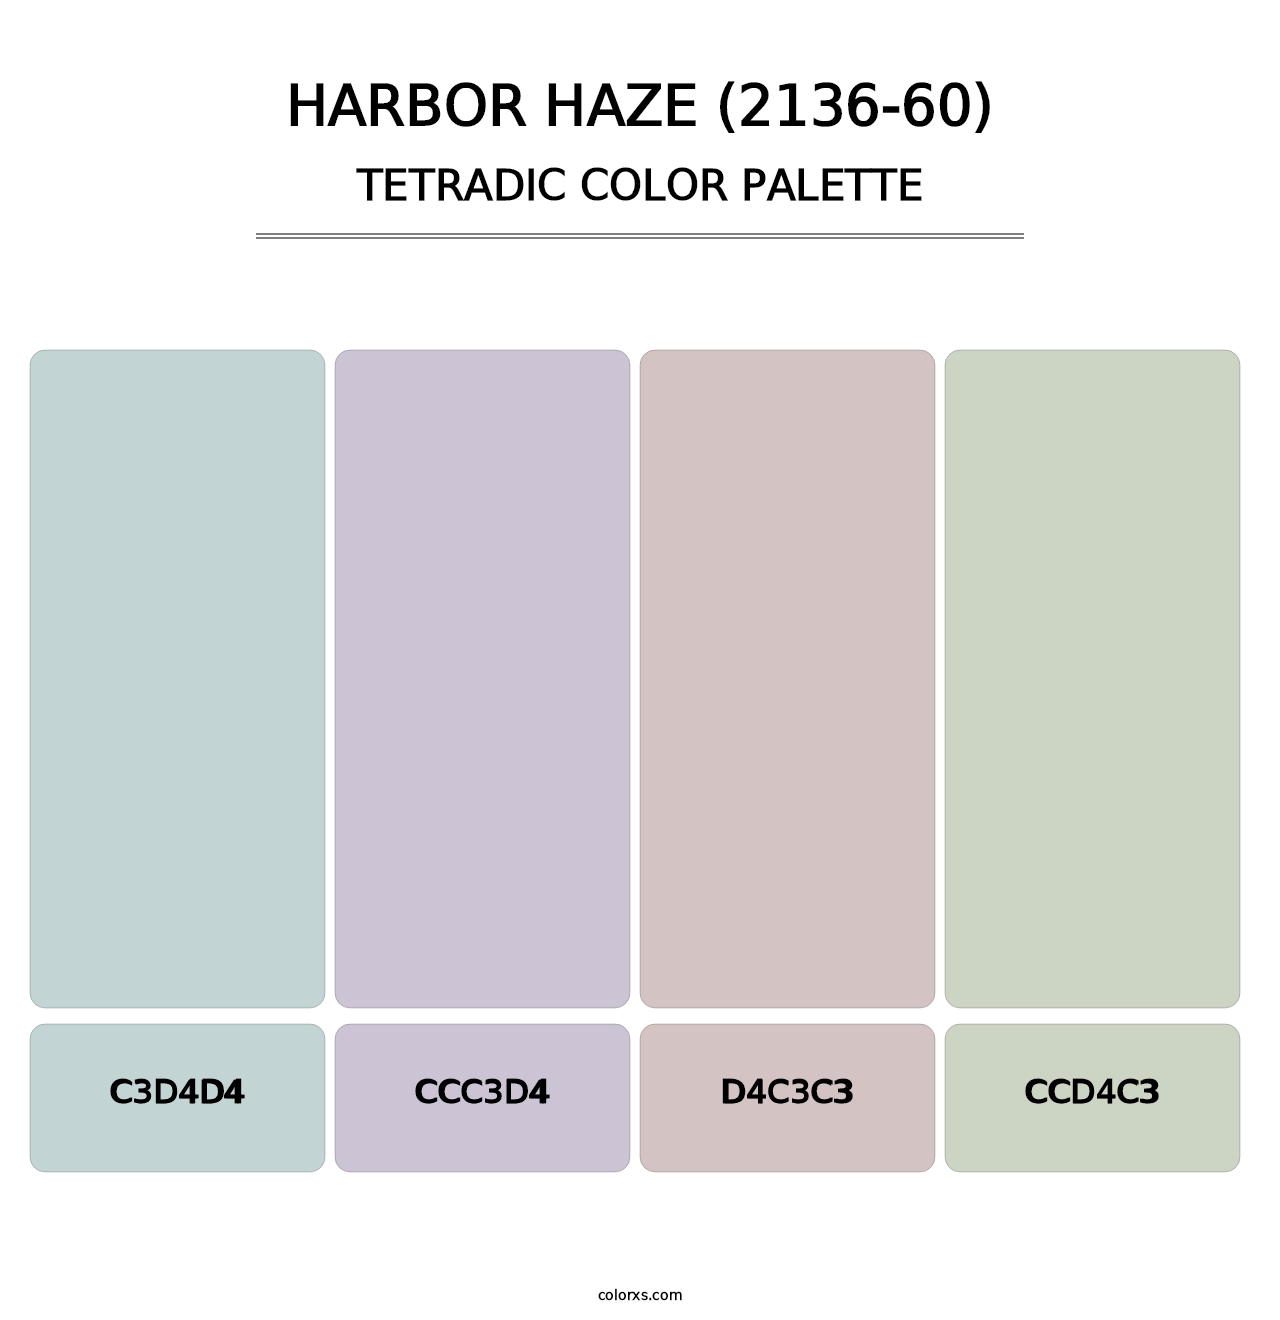 Harbor Haze (2136-60) - Tetradic Color Palette